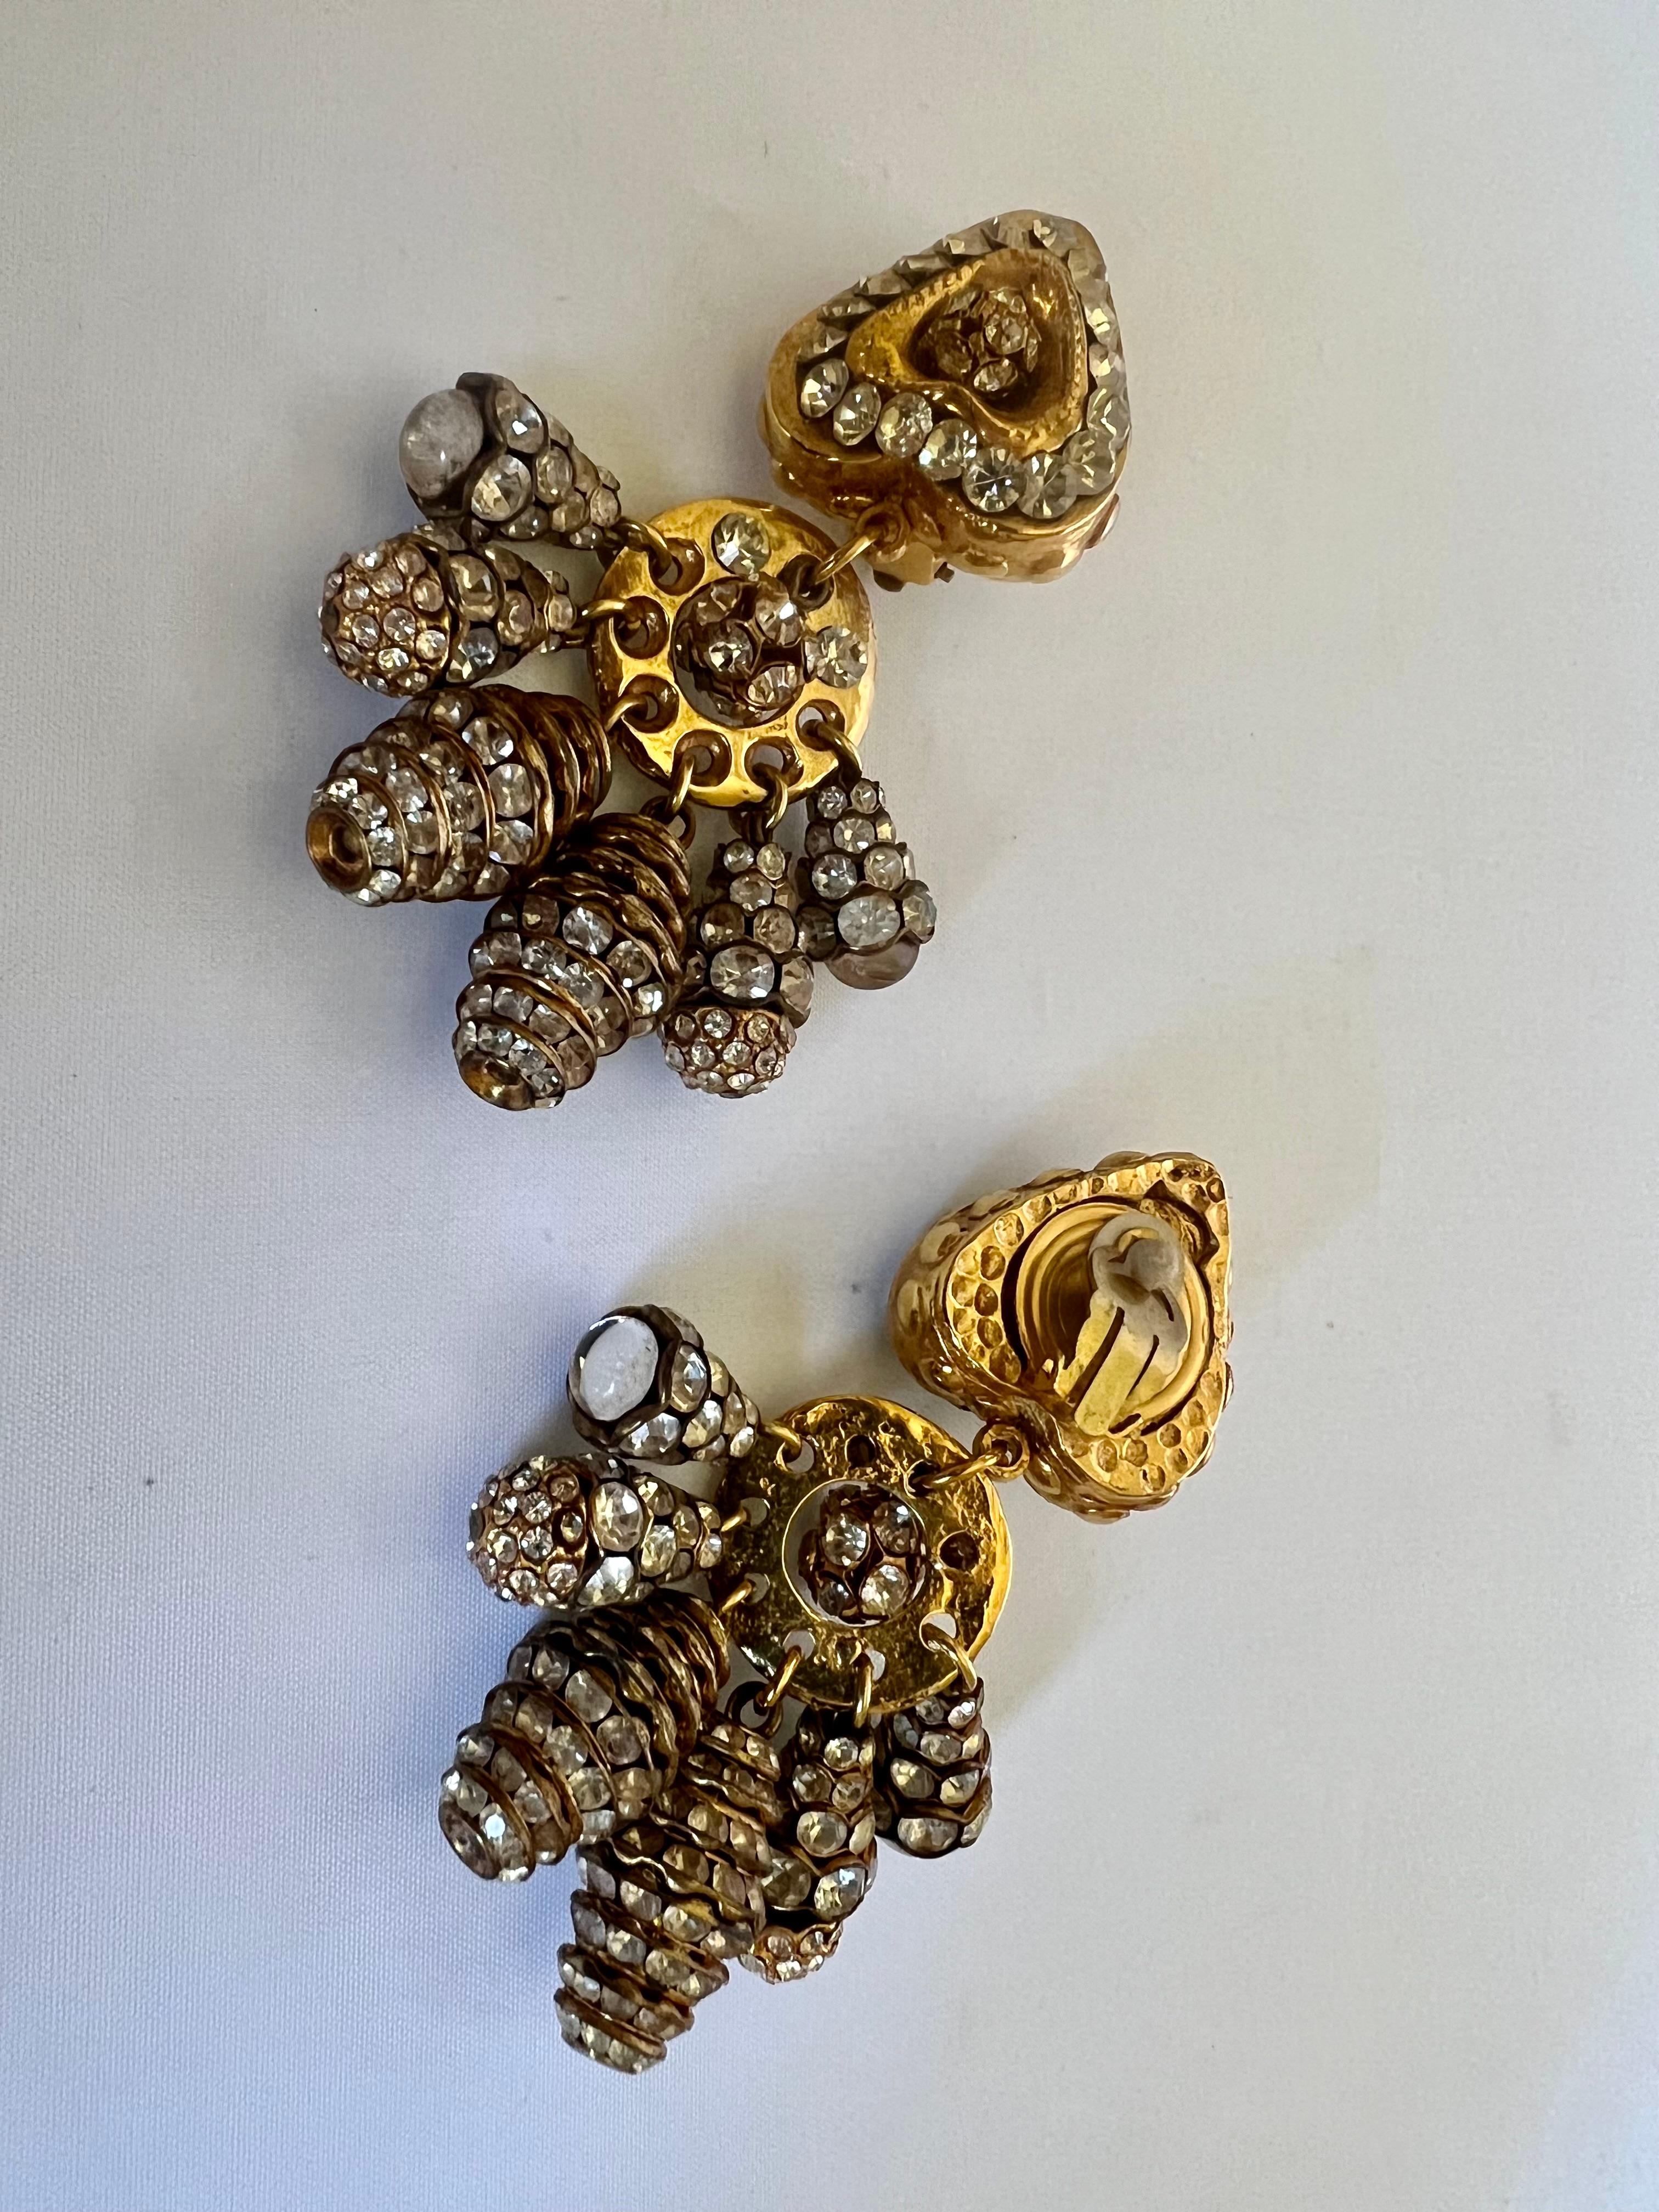 Boucles d'oreilles vintage en métal doré en forme de cœur avec strass, réalisées en France vers 1980.